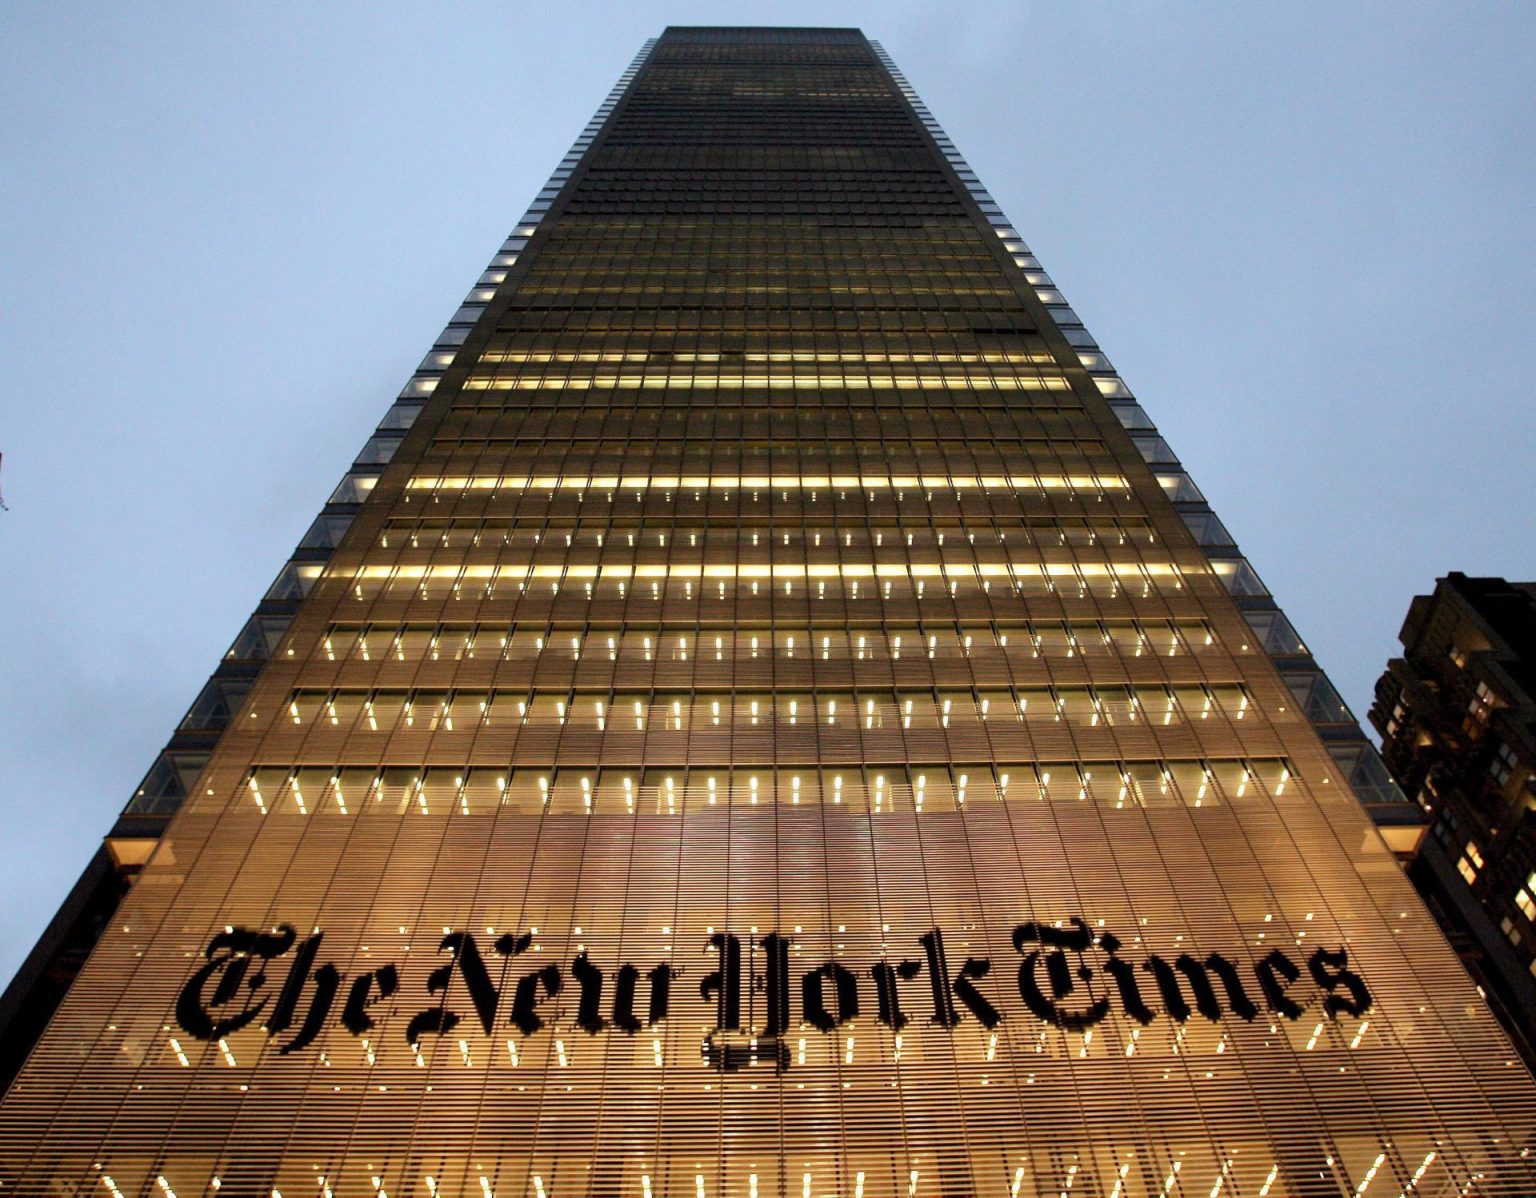 Vista de la sede principal del diario estadounidense The New York Times. Imagen de archivo. EFE/JUSTIN LANE